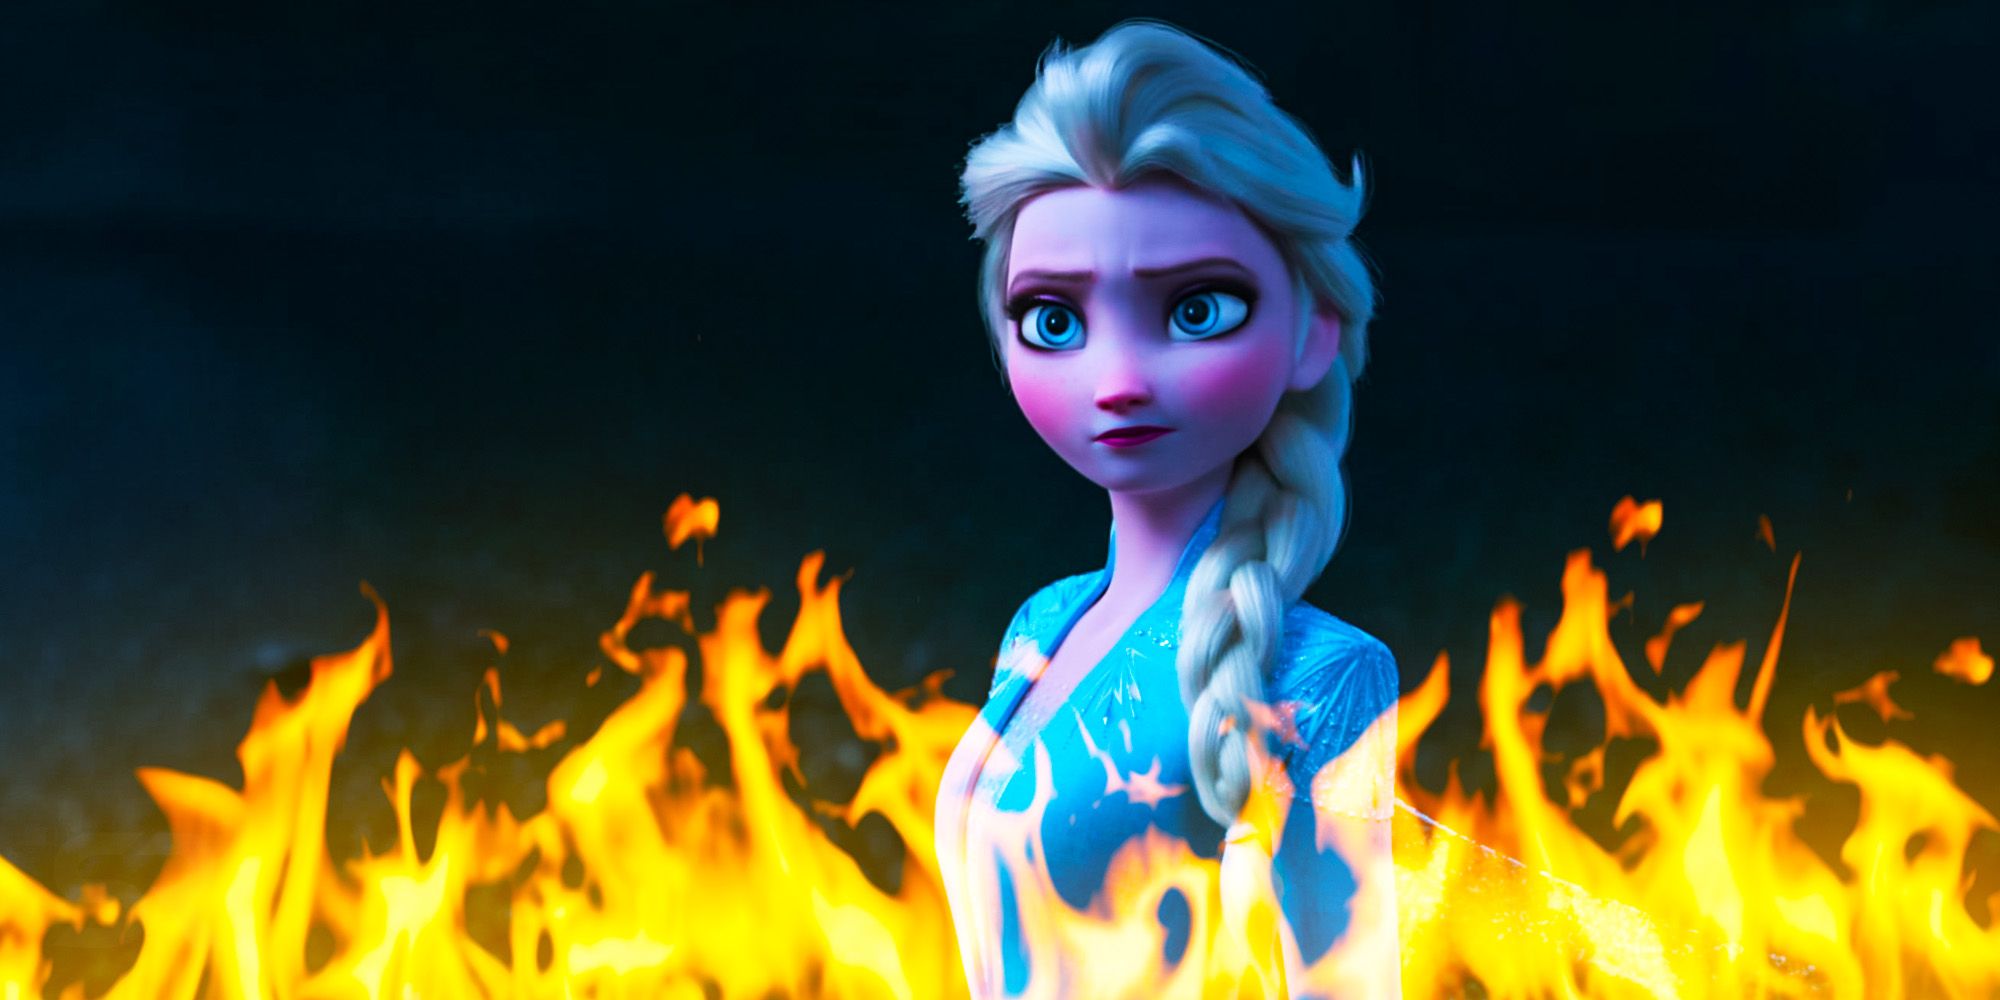 Frozen 3 necesita evitar 1 cliché de villano innecesario